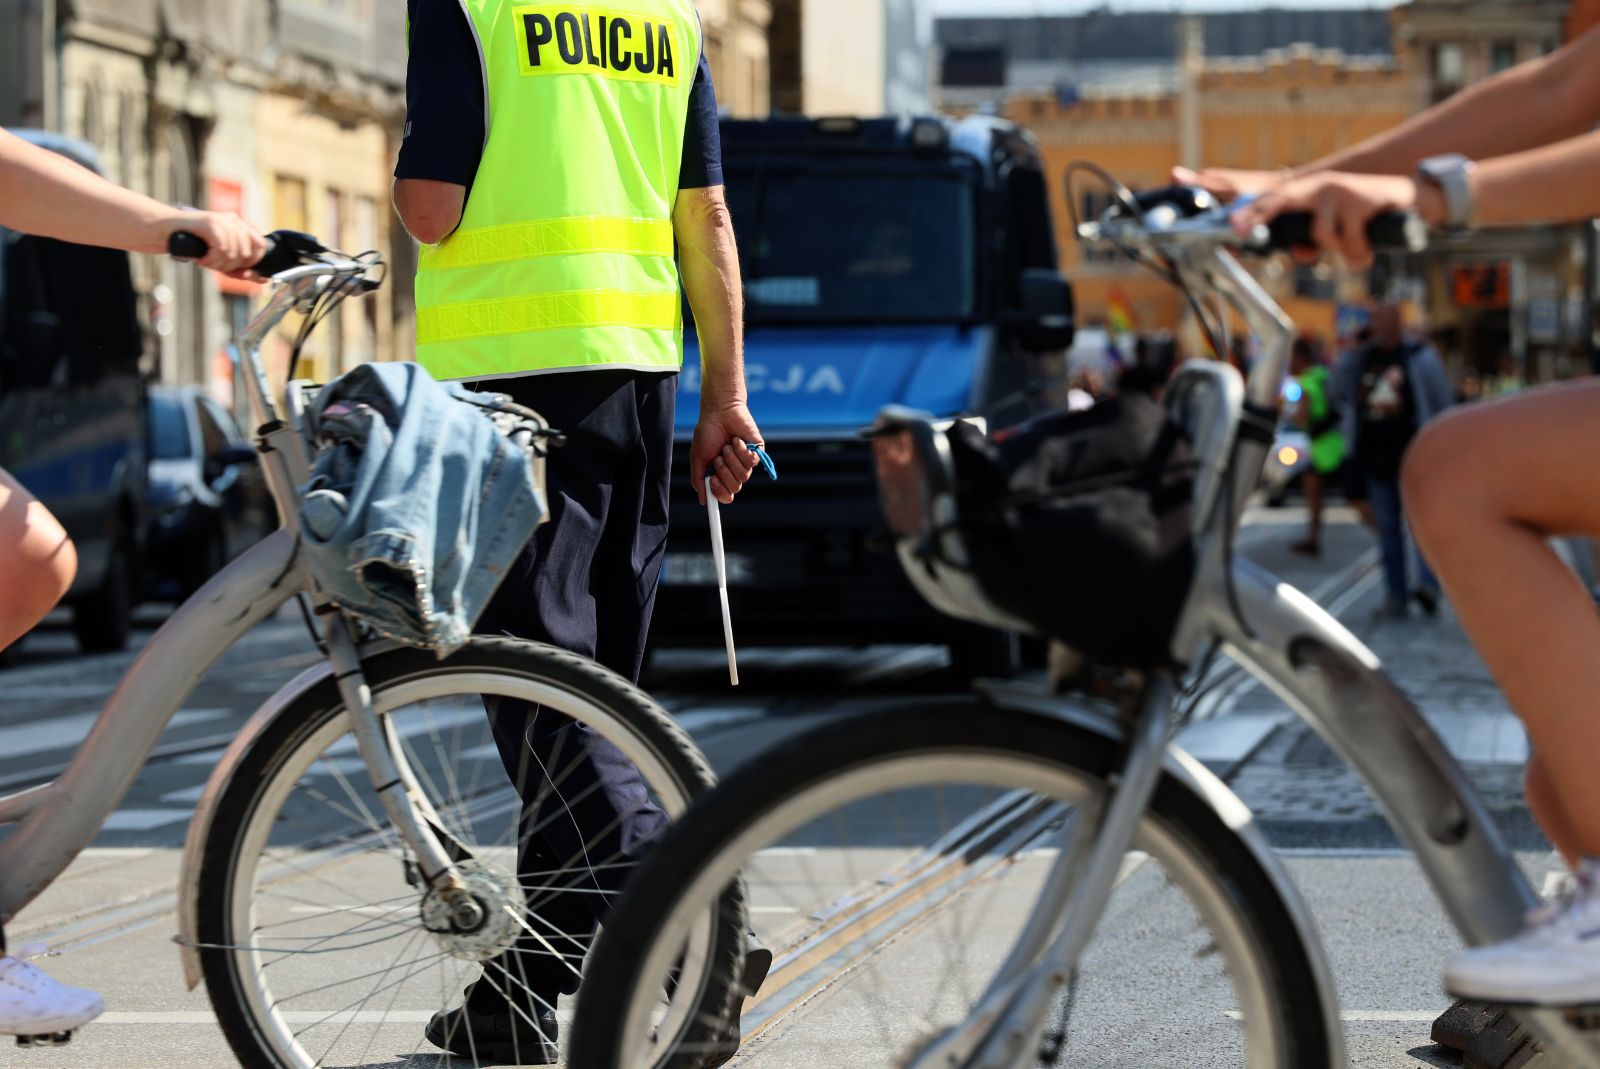 Mandat za przejazd rowerem przez pasy. Kiedy policja ma prawo wystawić rowerzyście mandat?